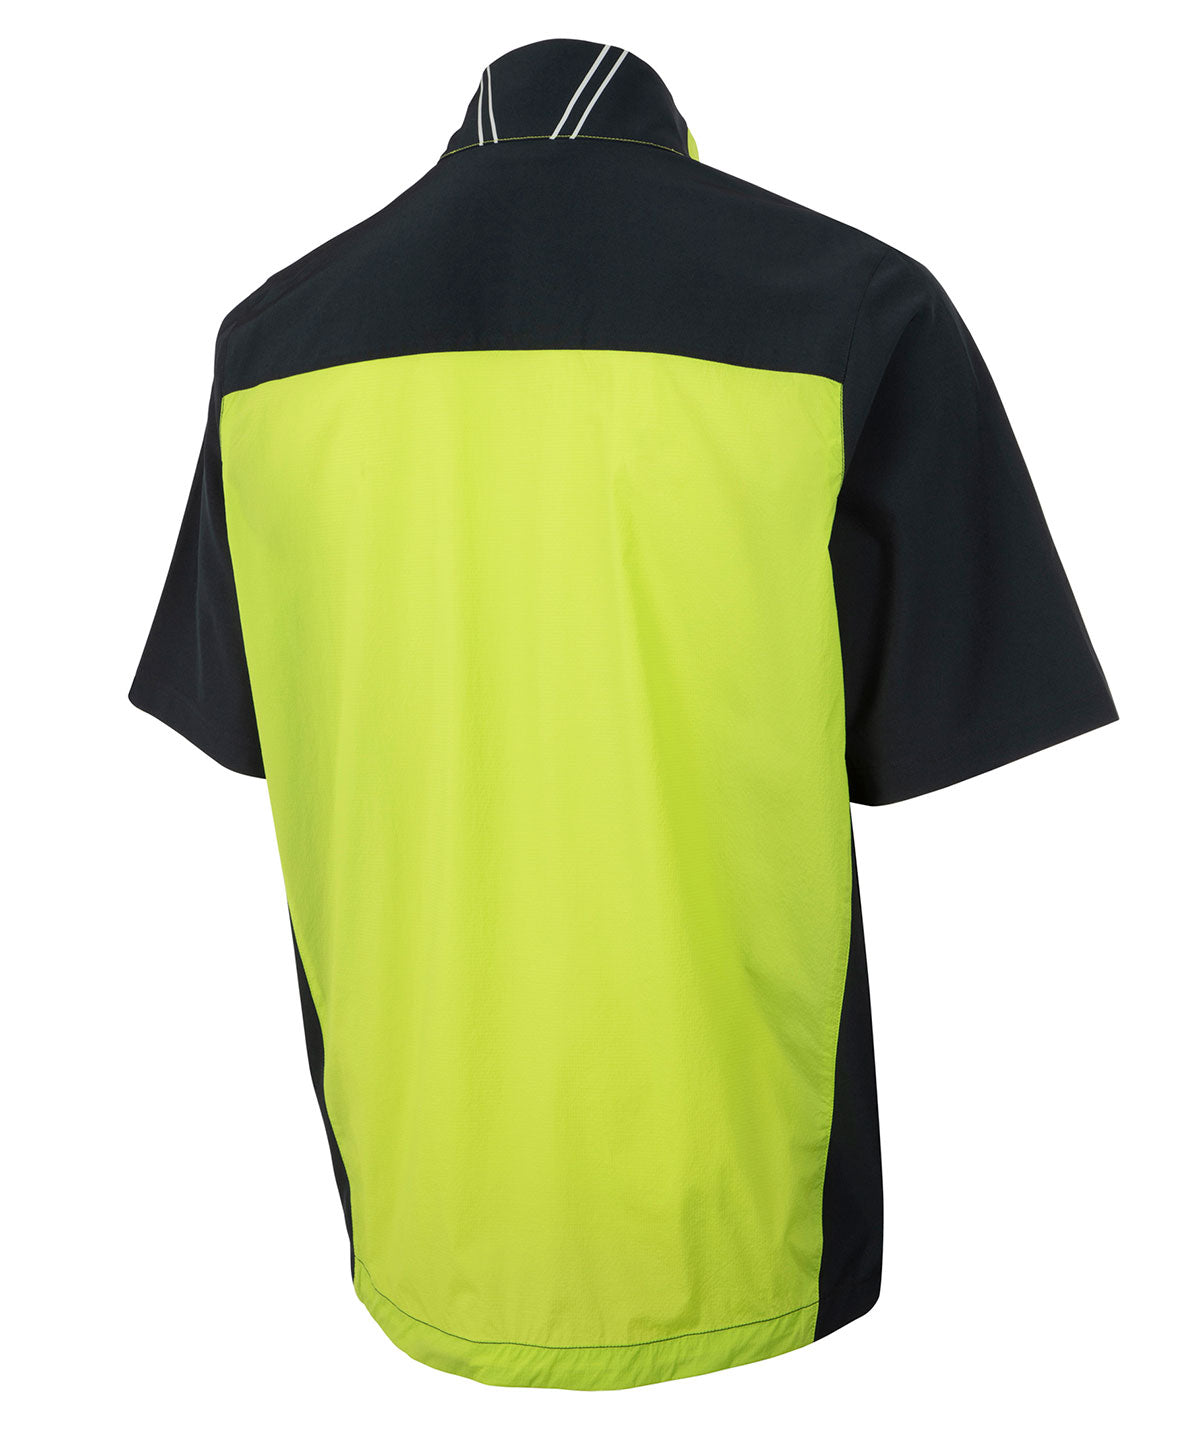 Avia Running Shirt Mens Medium Green Black Mesh Short Sleeve